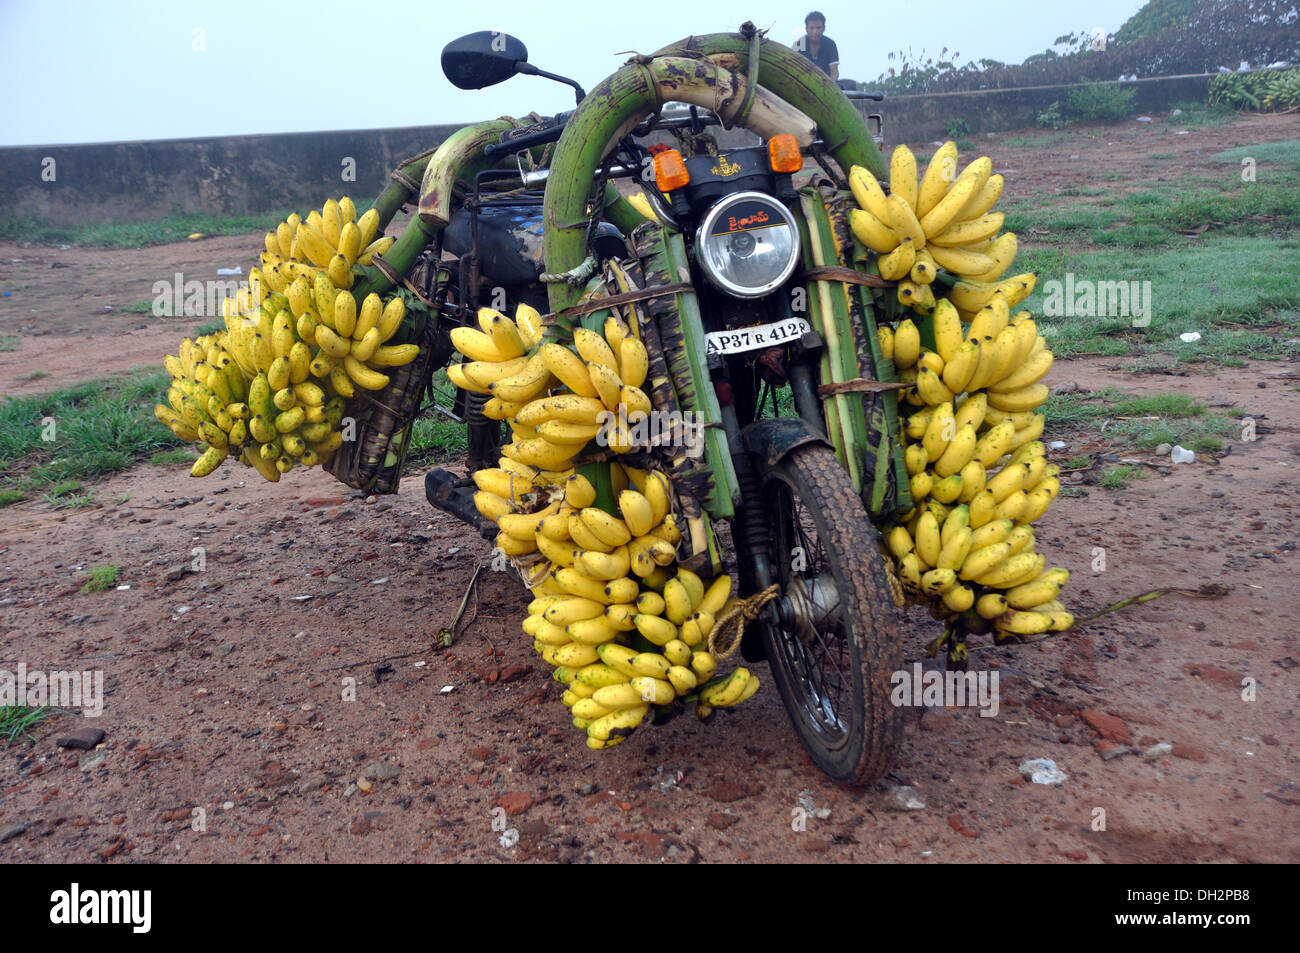 Bananes sur moto à rajahmundry Andhra Pradesh Inde Banque D'Images